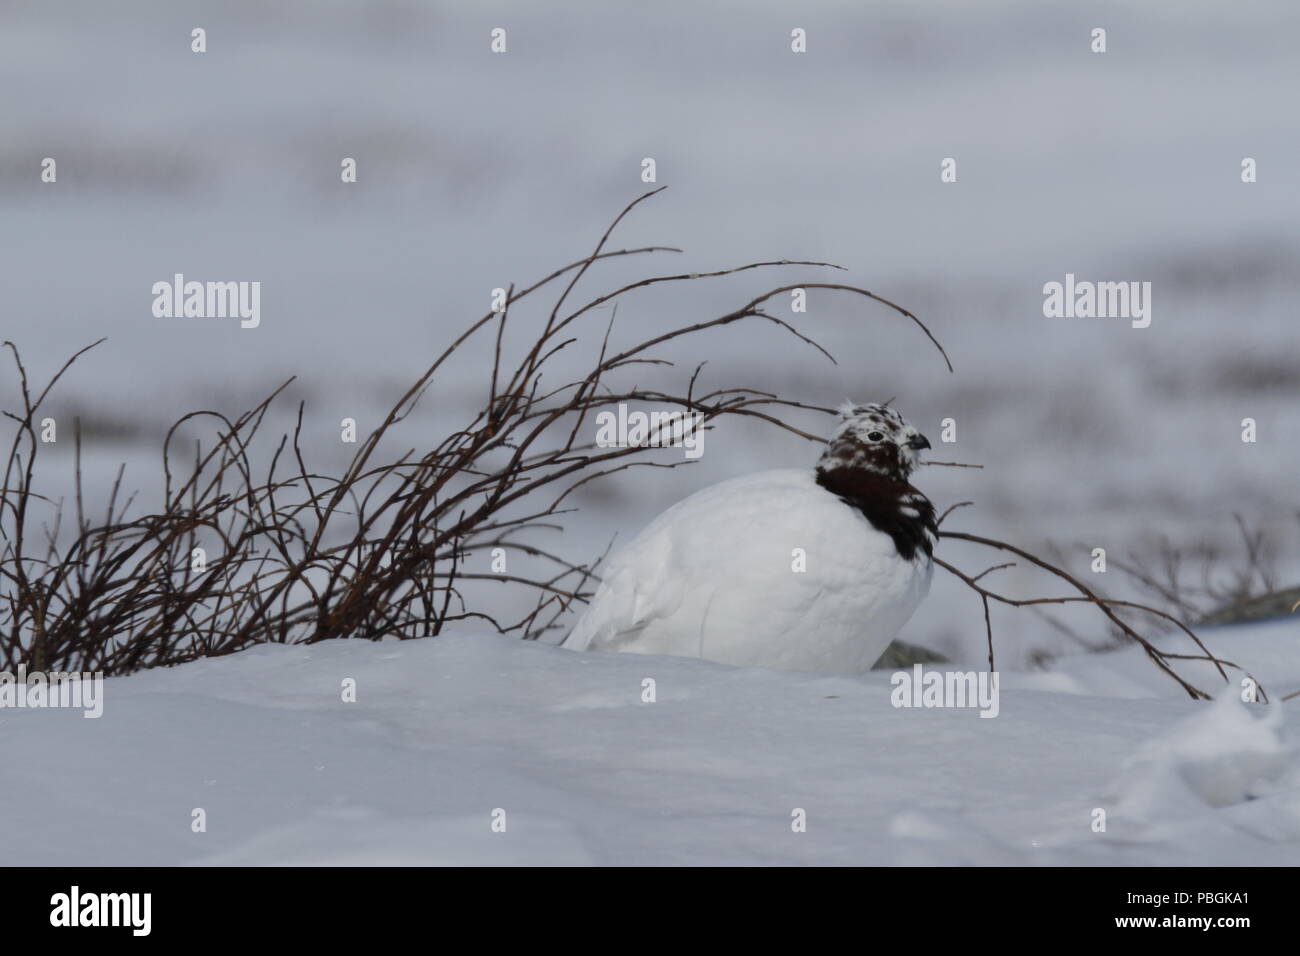 Lagopède des mâles adultes, Lagopus mutus, assis dans la neige avec des branches de saule dans l'arrière-plan, Arviat, Nunavut, Canada l'Arctique Banque D'Images